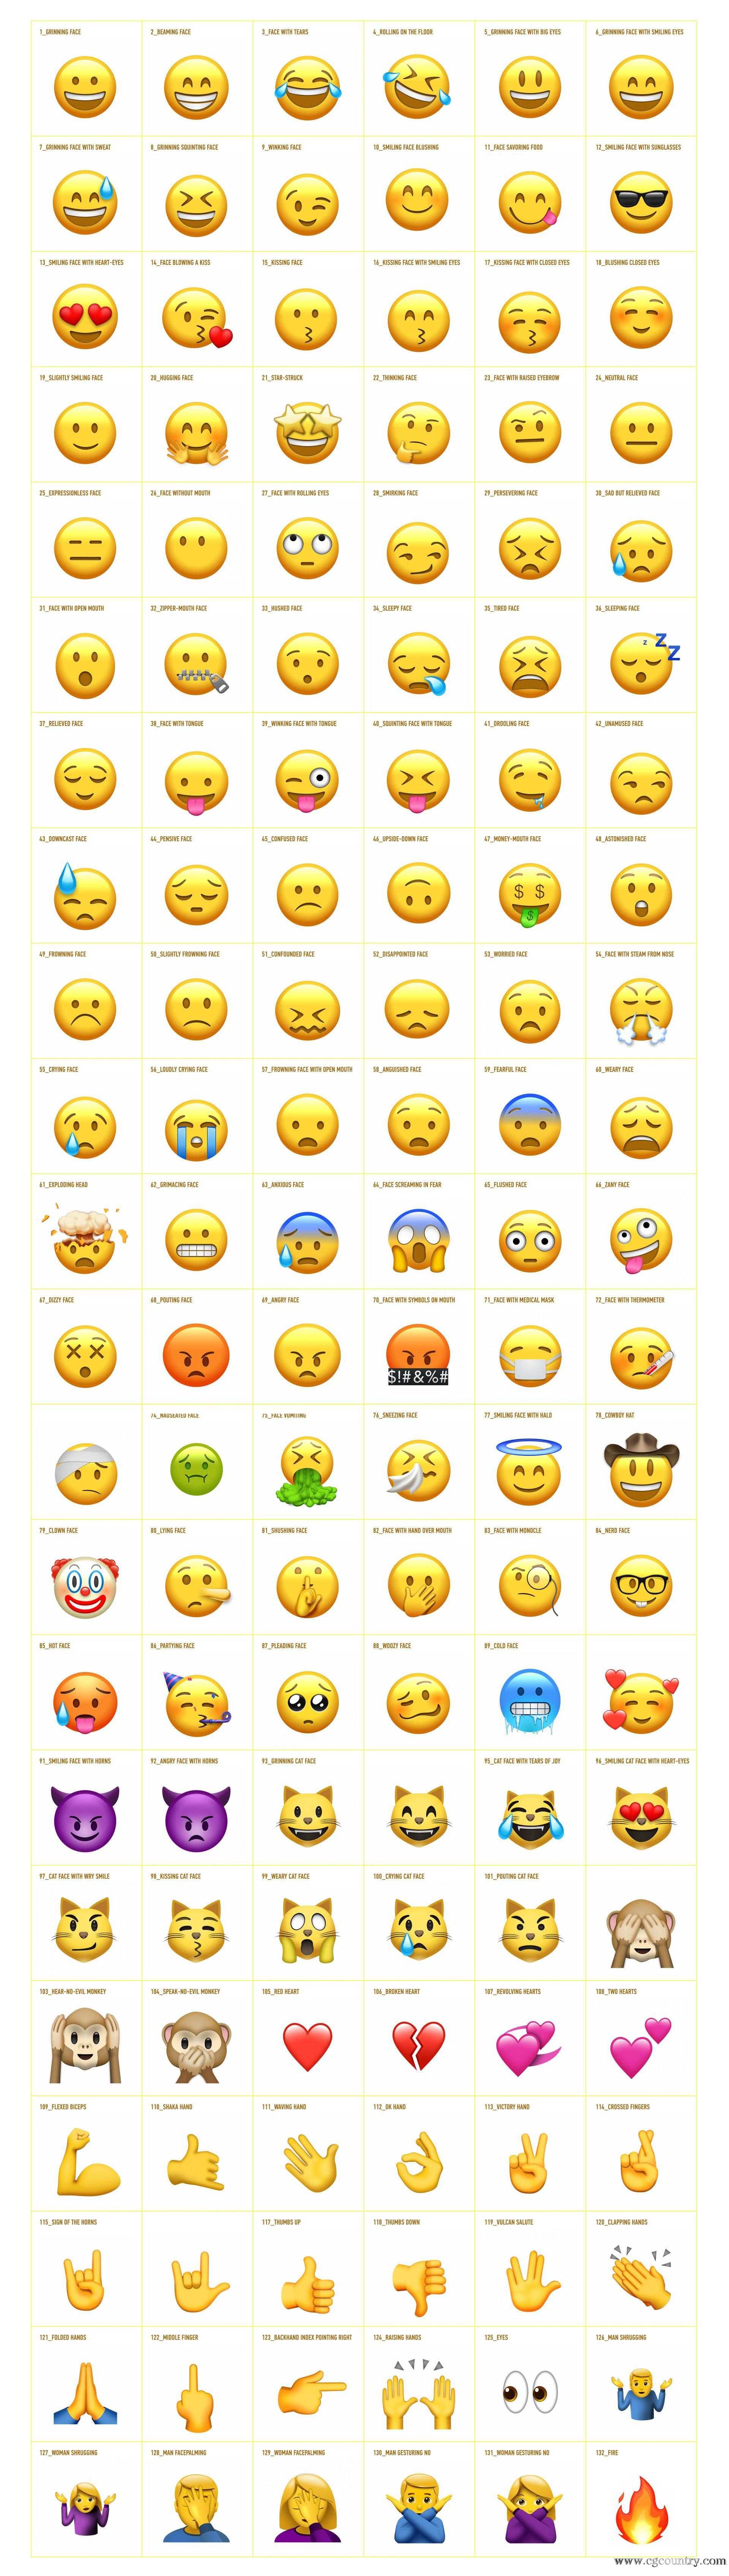 ae模板-132个可爱卡通社交网络emoji表情动画 渲染好的视频素材